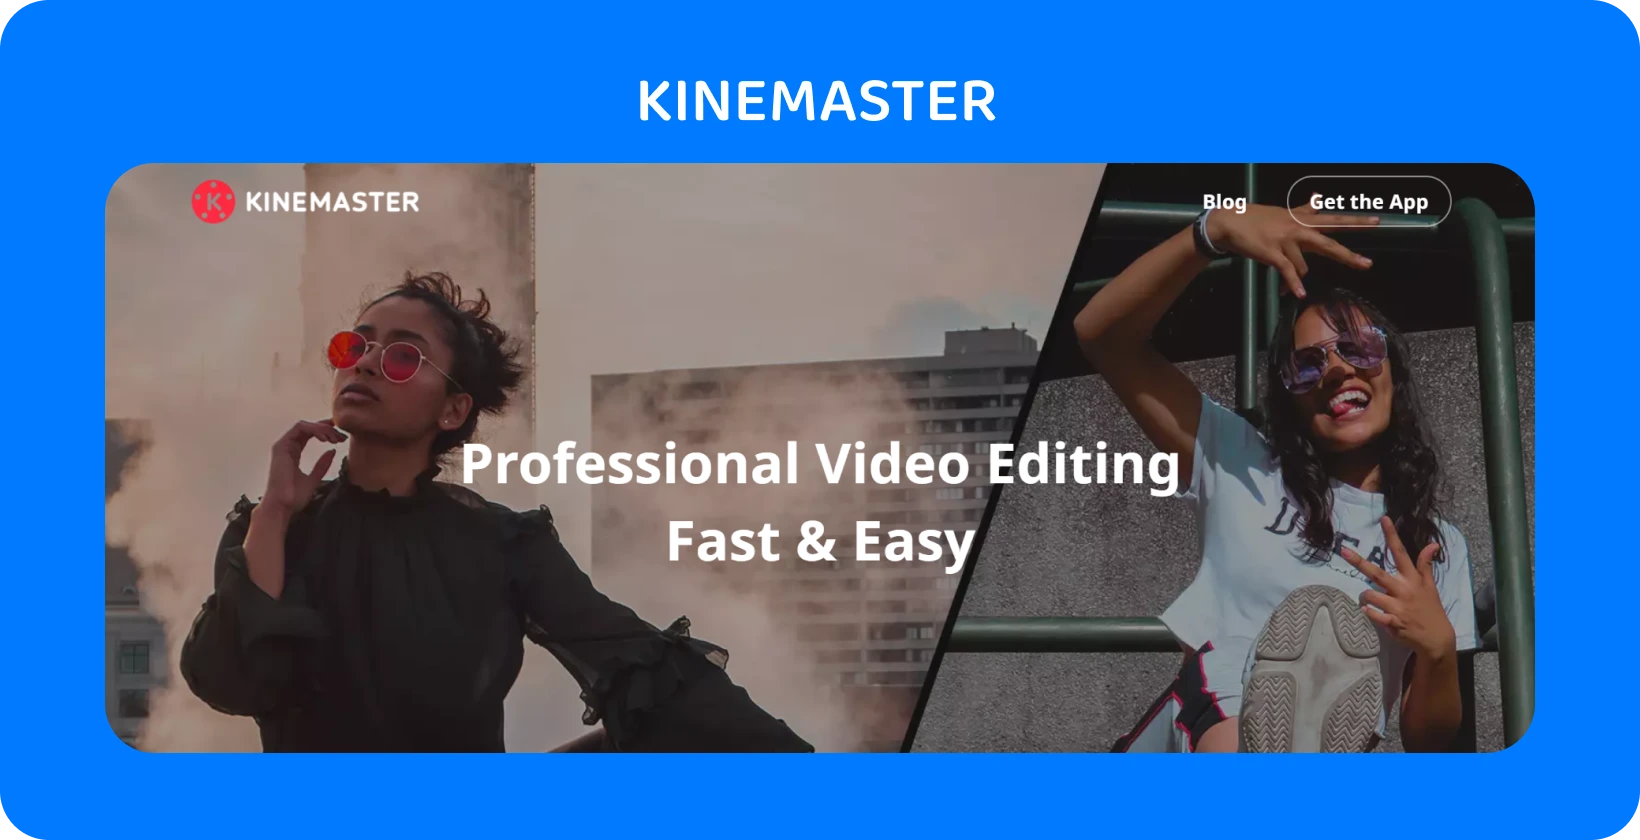 Publicité de l’application KineMaster avec deux modèles posant, mettant en évidence un montage vidéo professionnel rapide et facile.